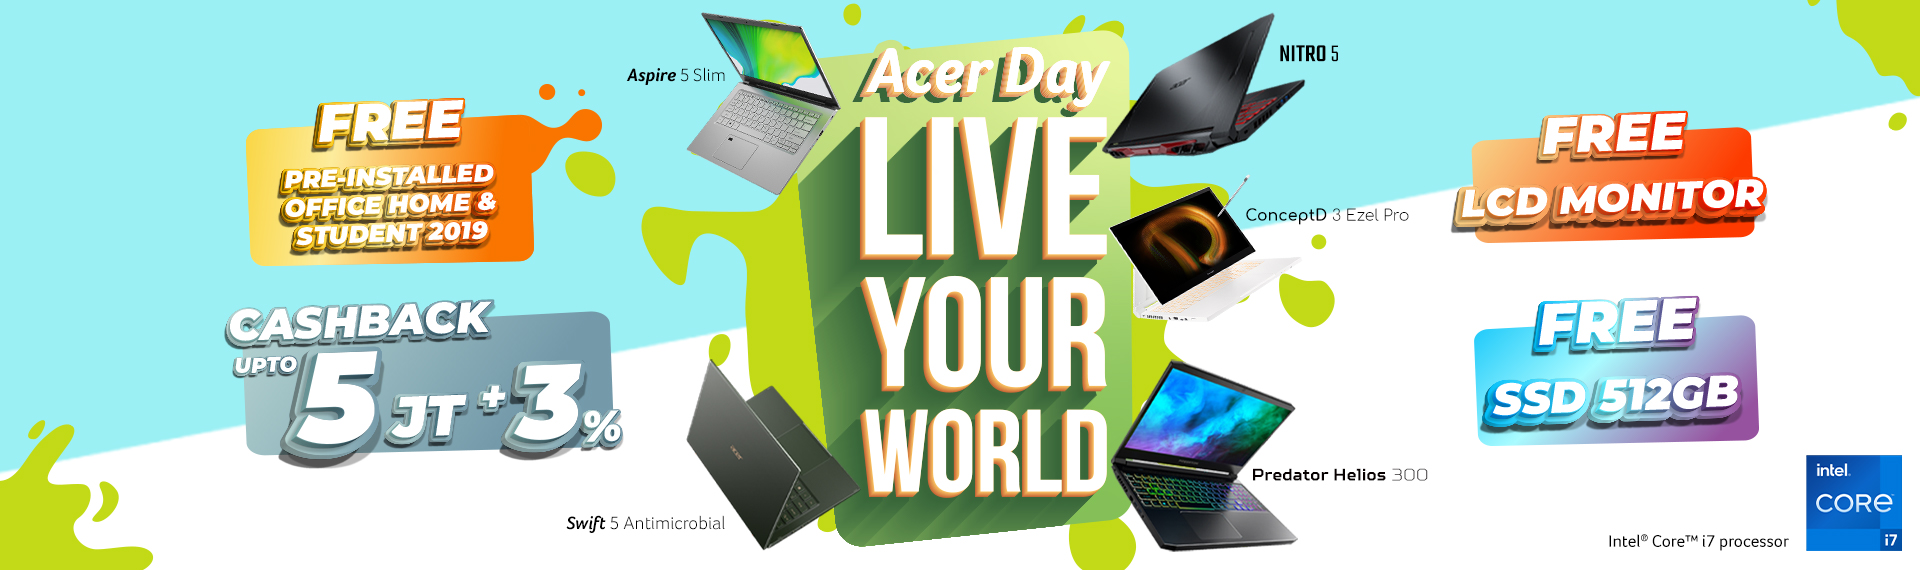 Acer Day 2021: Live Your World! Banyak Tantangan Seru dan Promo Spesial Menantimu!